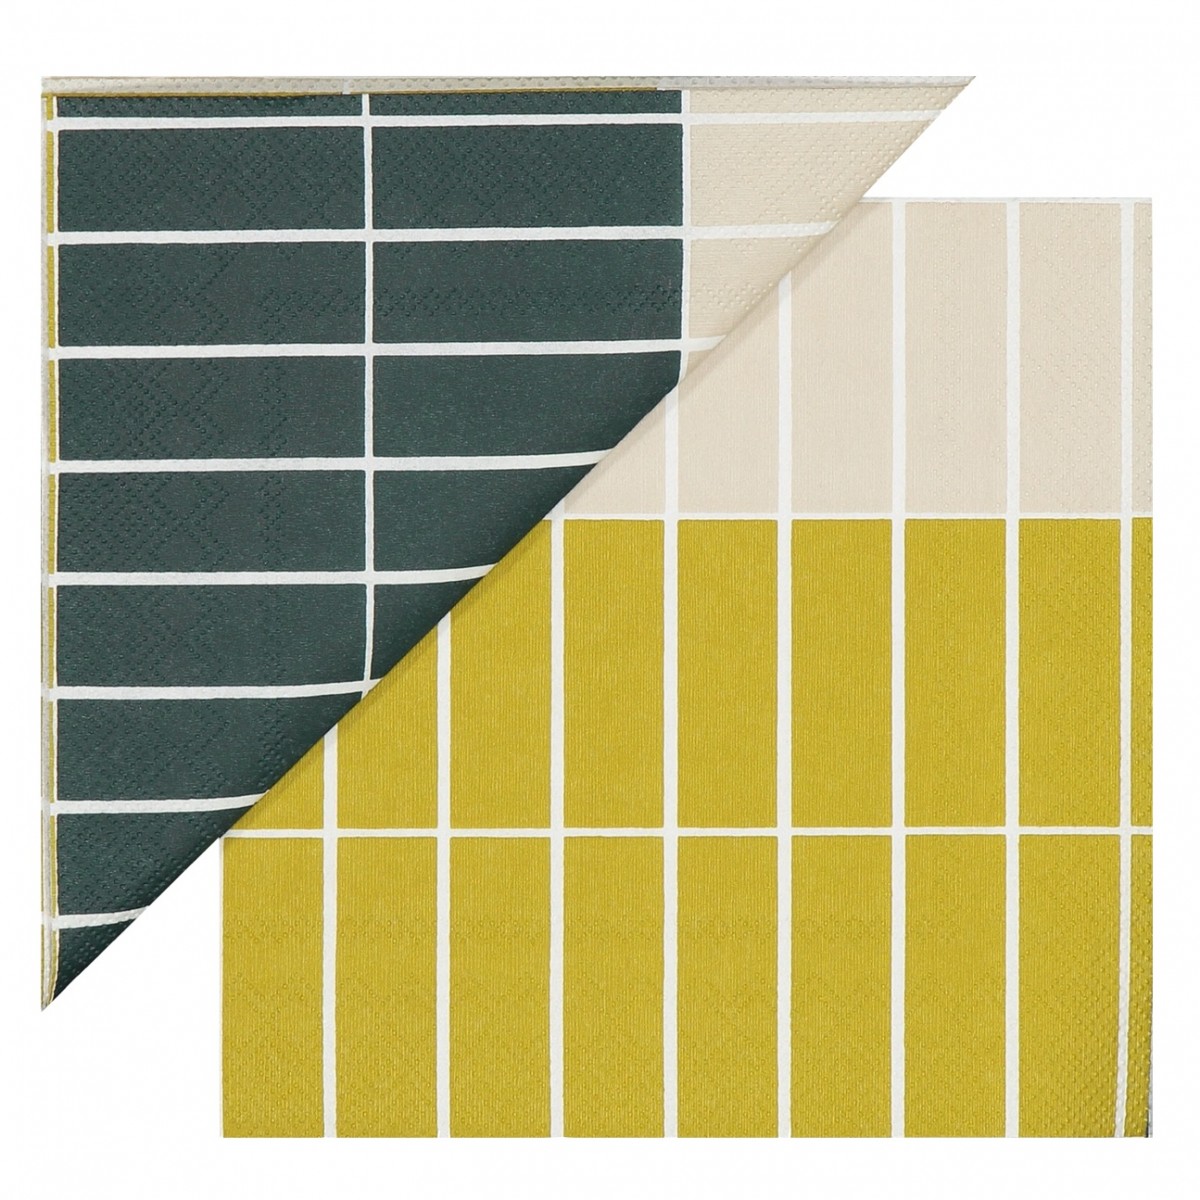 Tiiliskivi Raita - Gold - 903309 - paper napkins